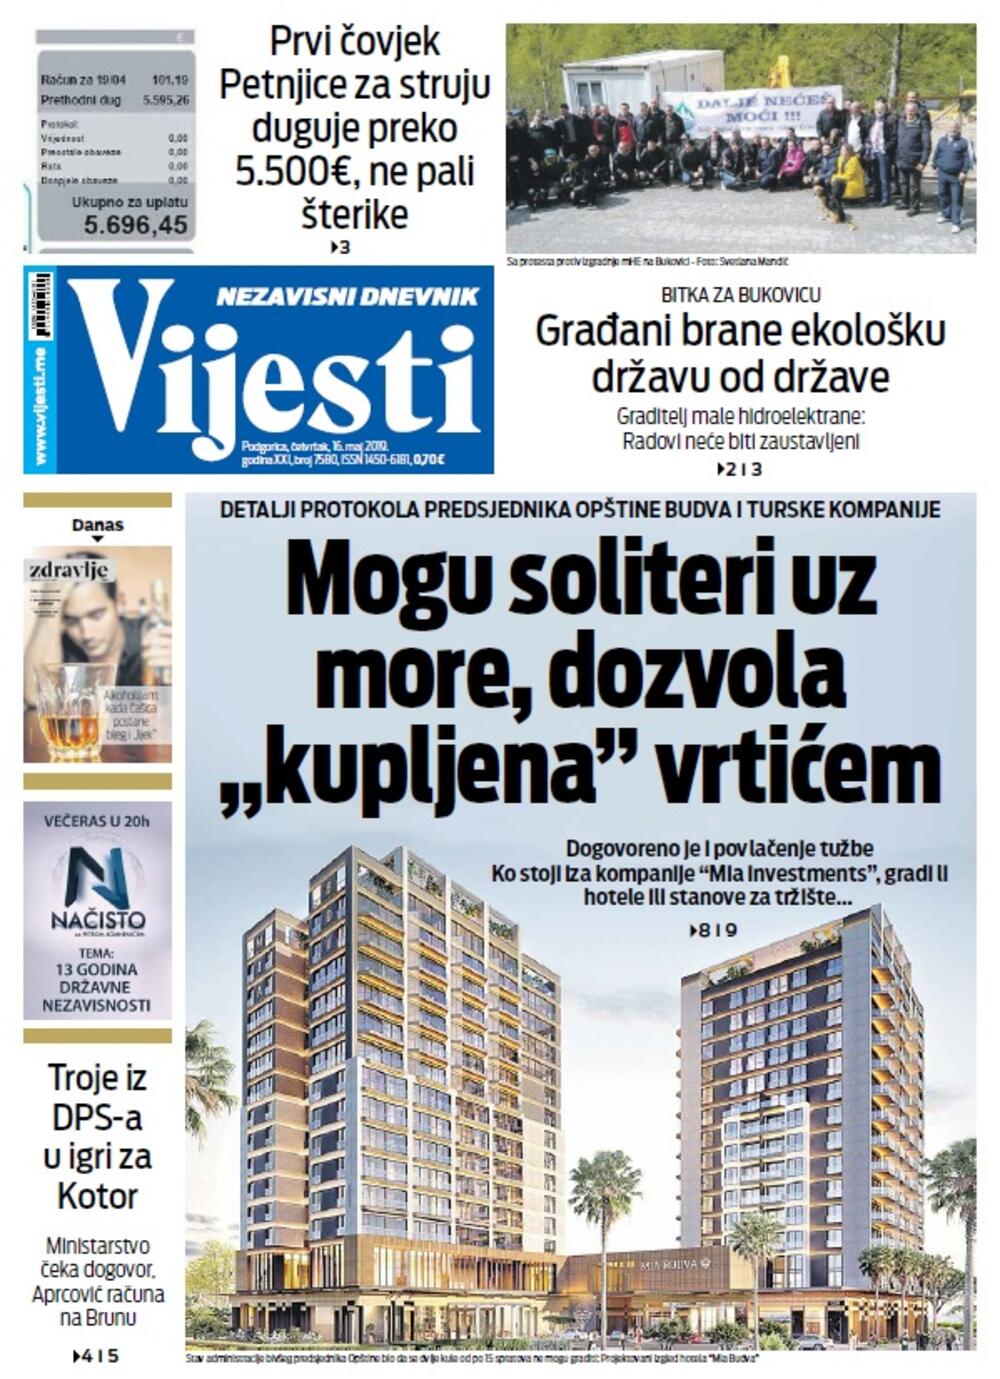 Naslovna strana "Vijesti" za 16. maj, Foto: Vijesti